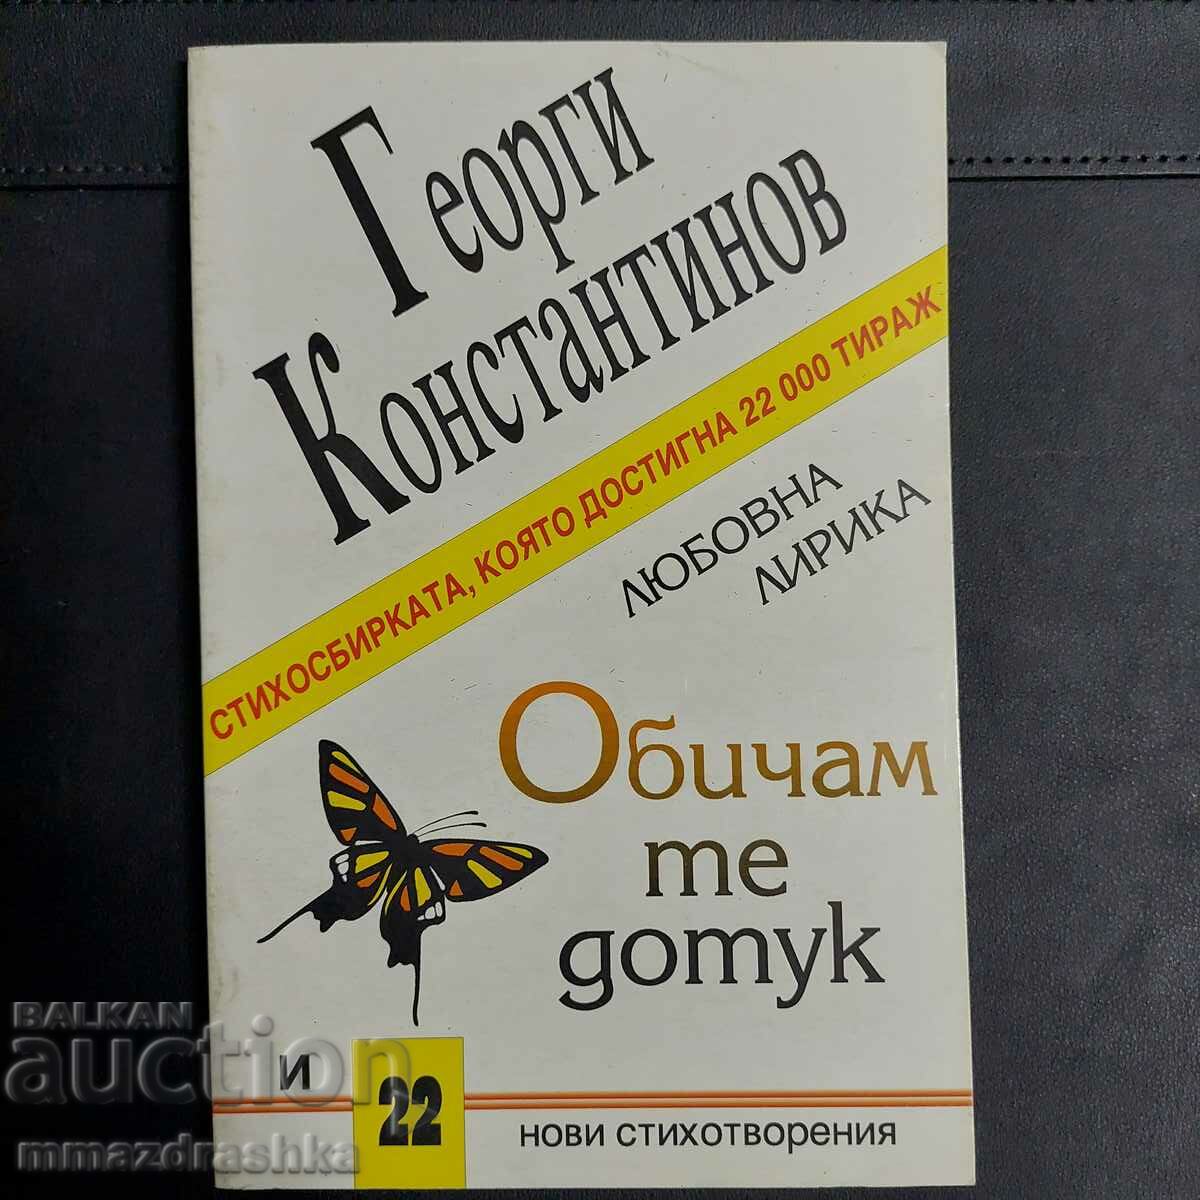 Αυτόγραφο! Σε αγαπώ μέχρι στιγμής, Γκεόργκι Κονσταντίνοφ